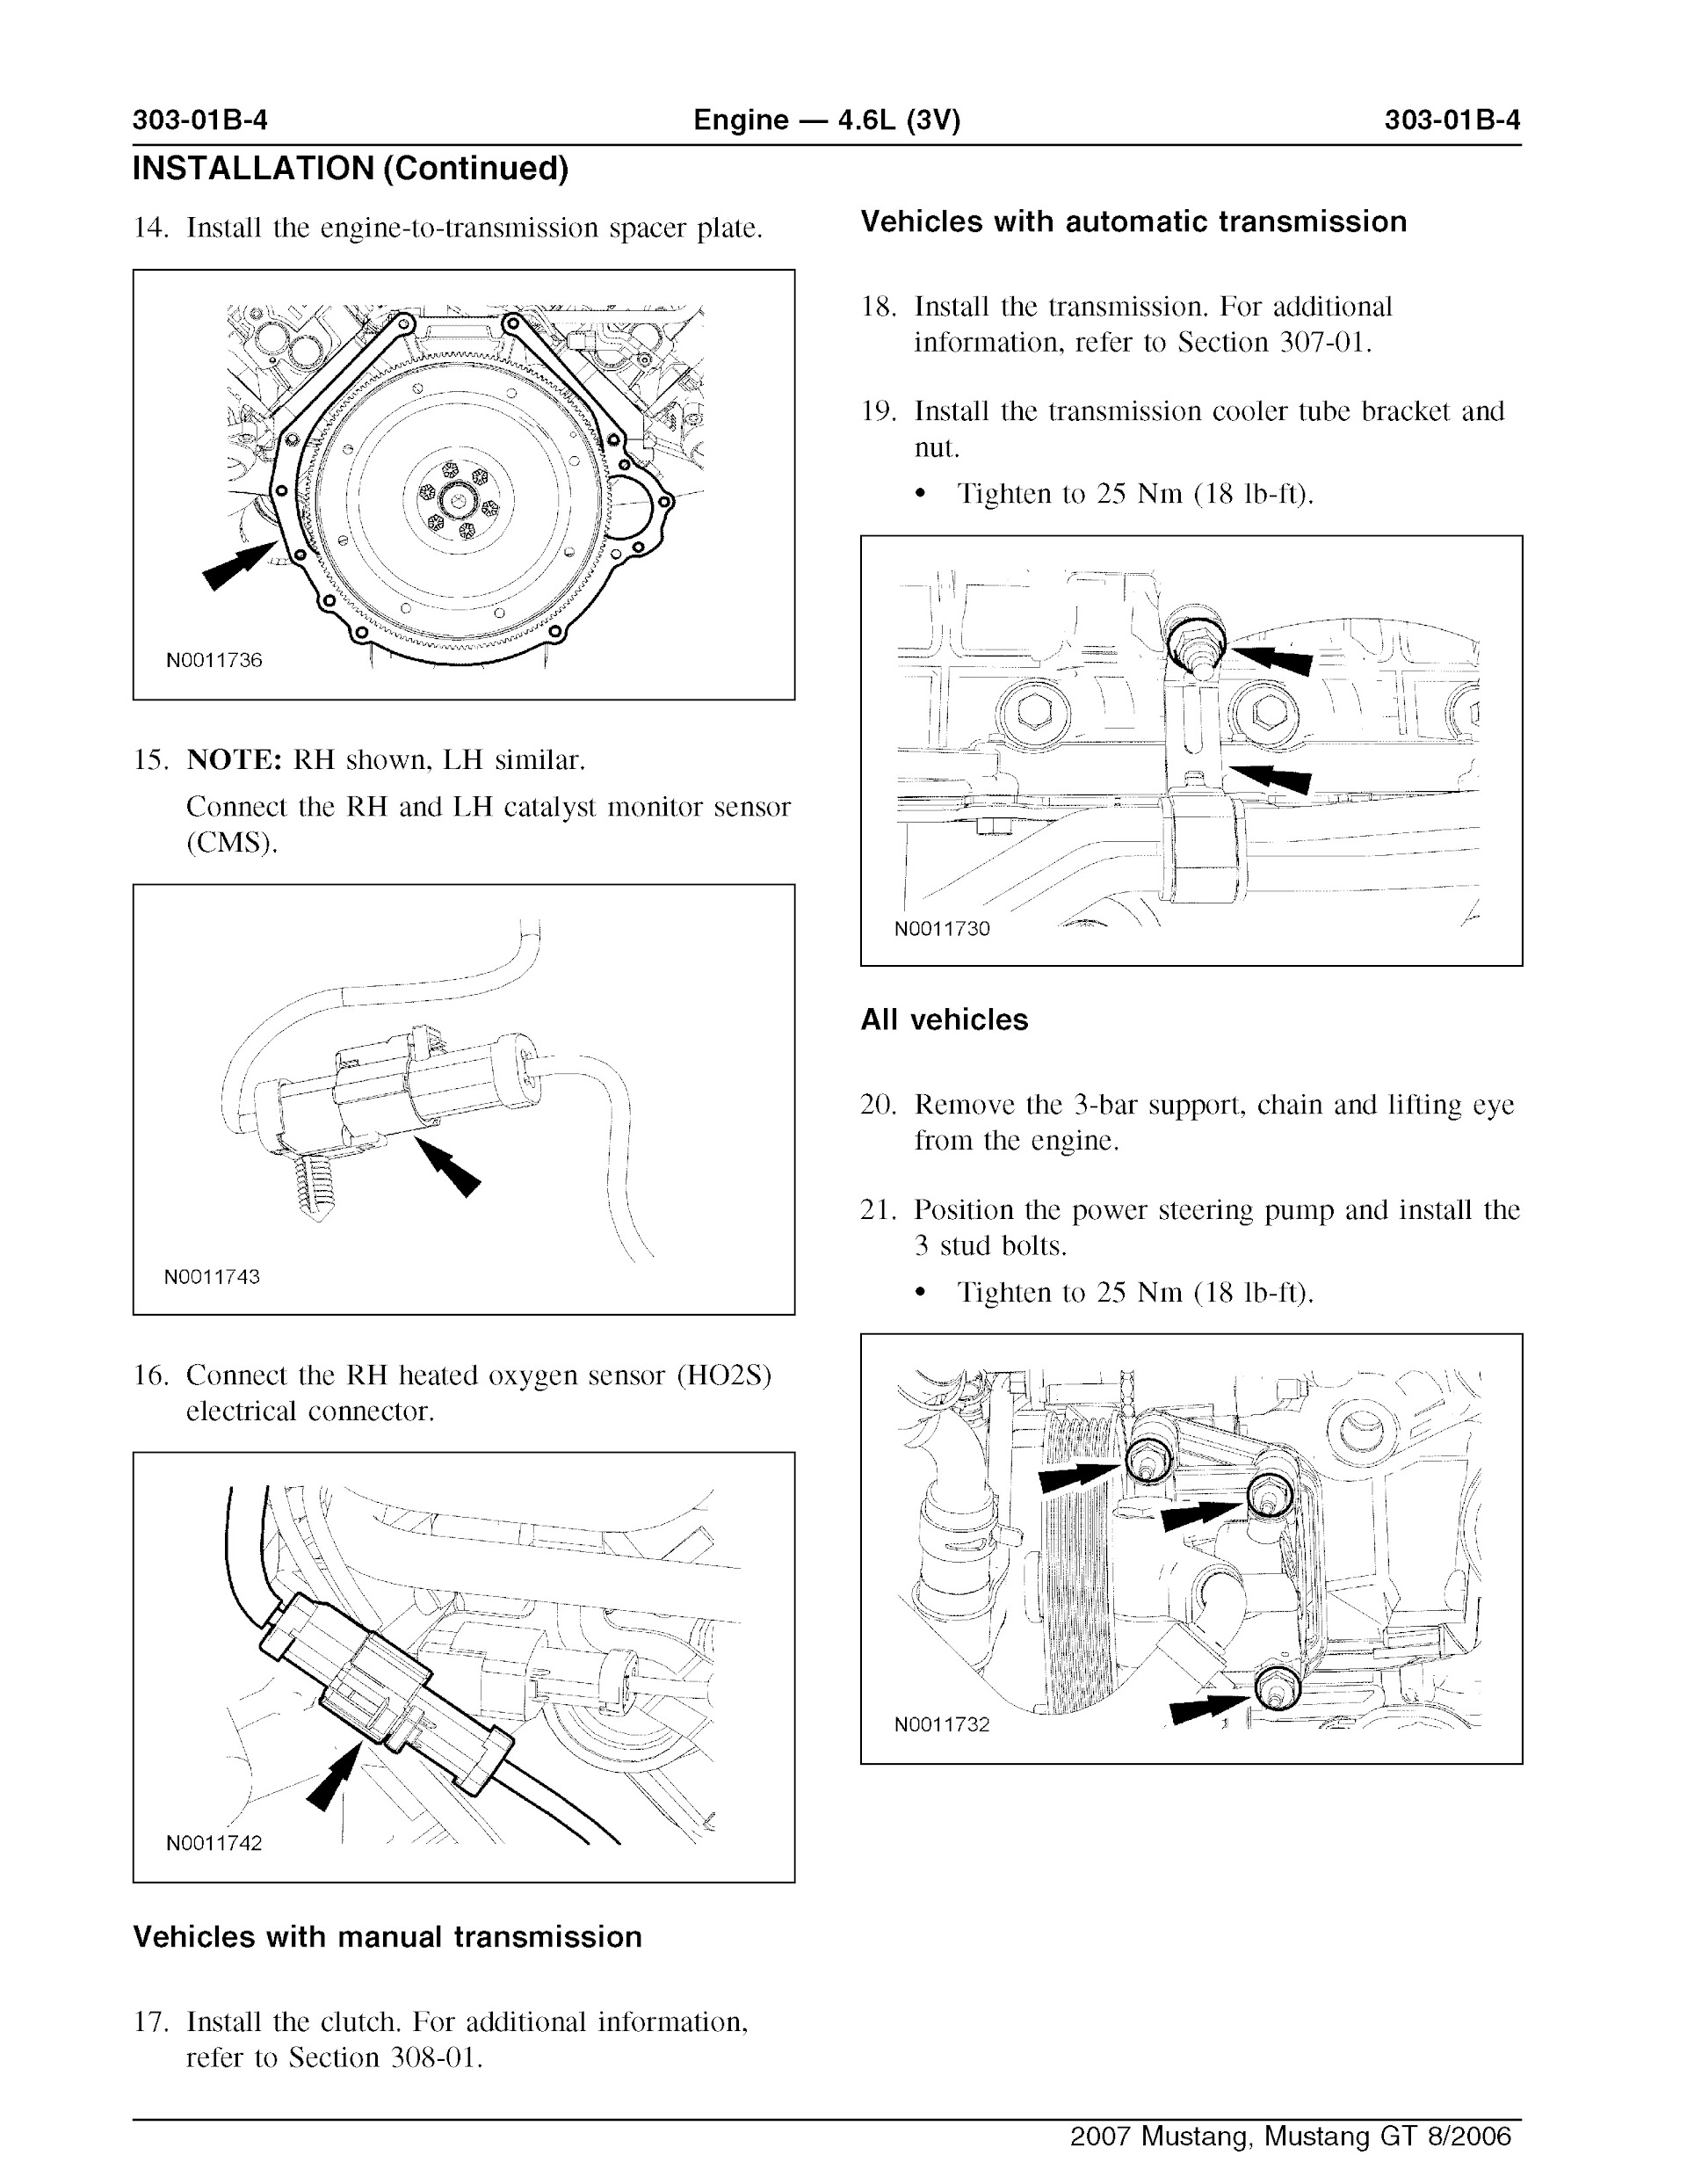 2007 Ford Mustang Repair Manual, Engine 4.6L (3V)